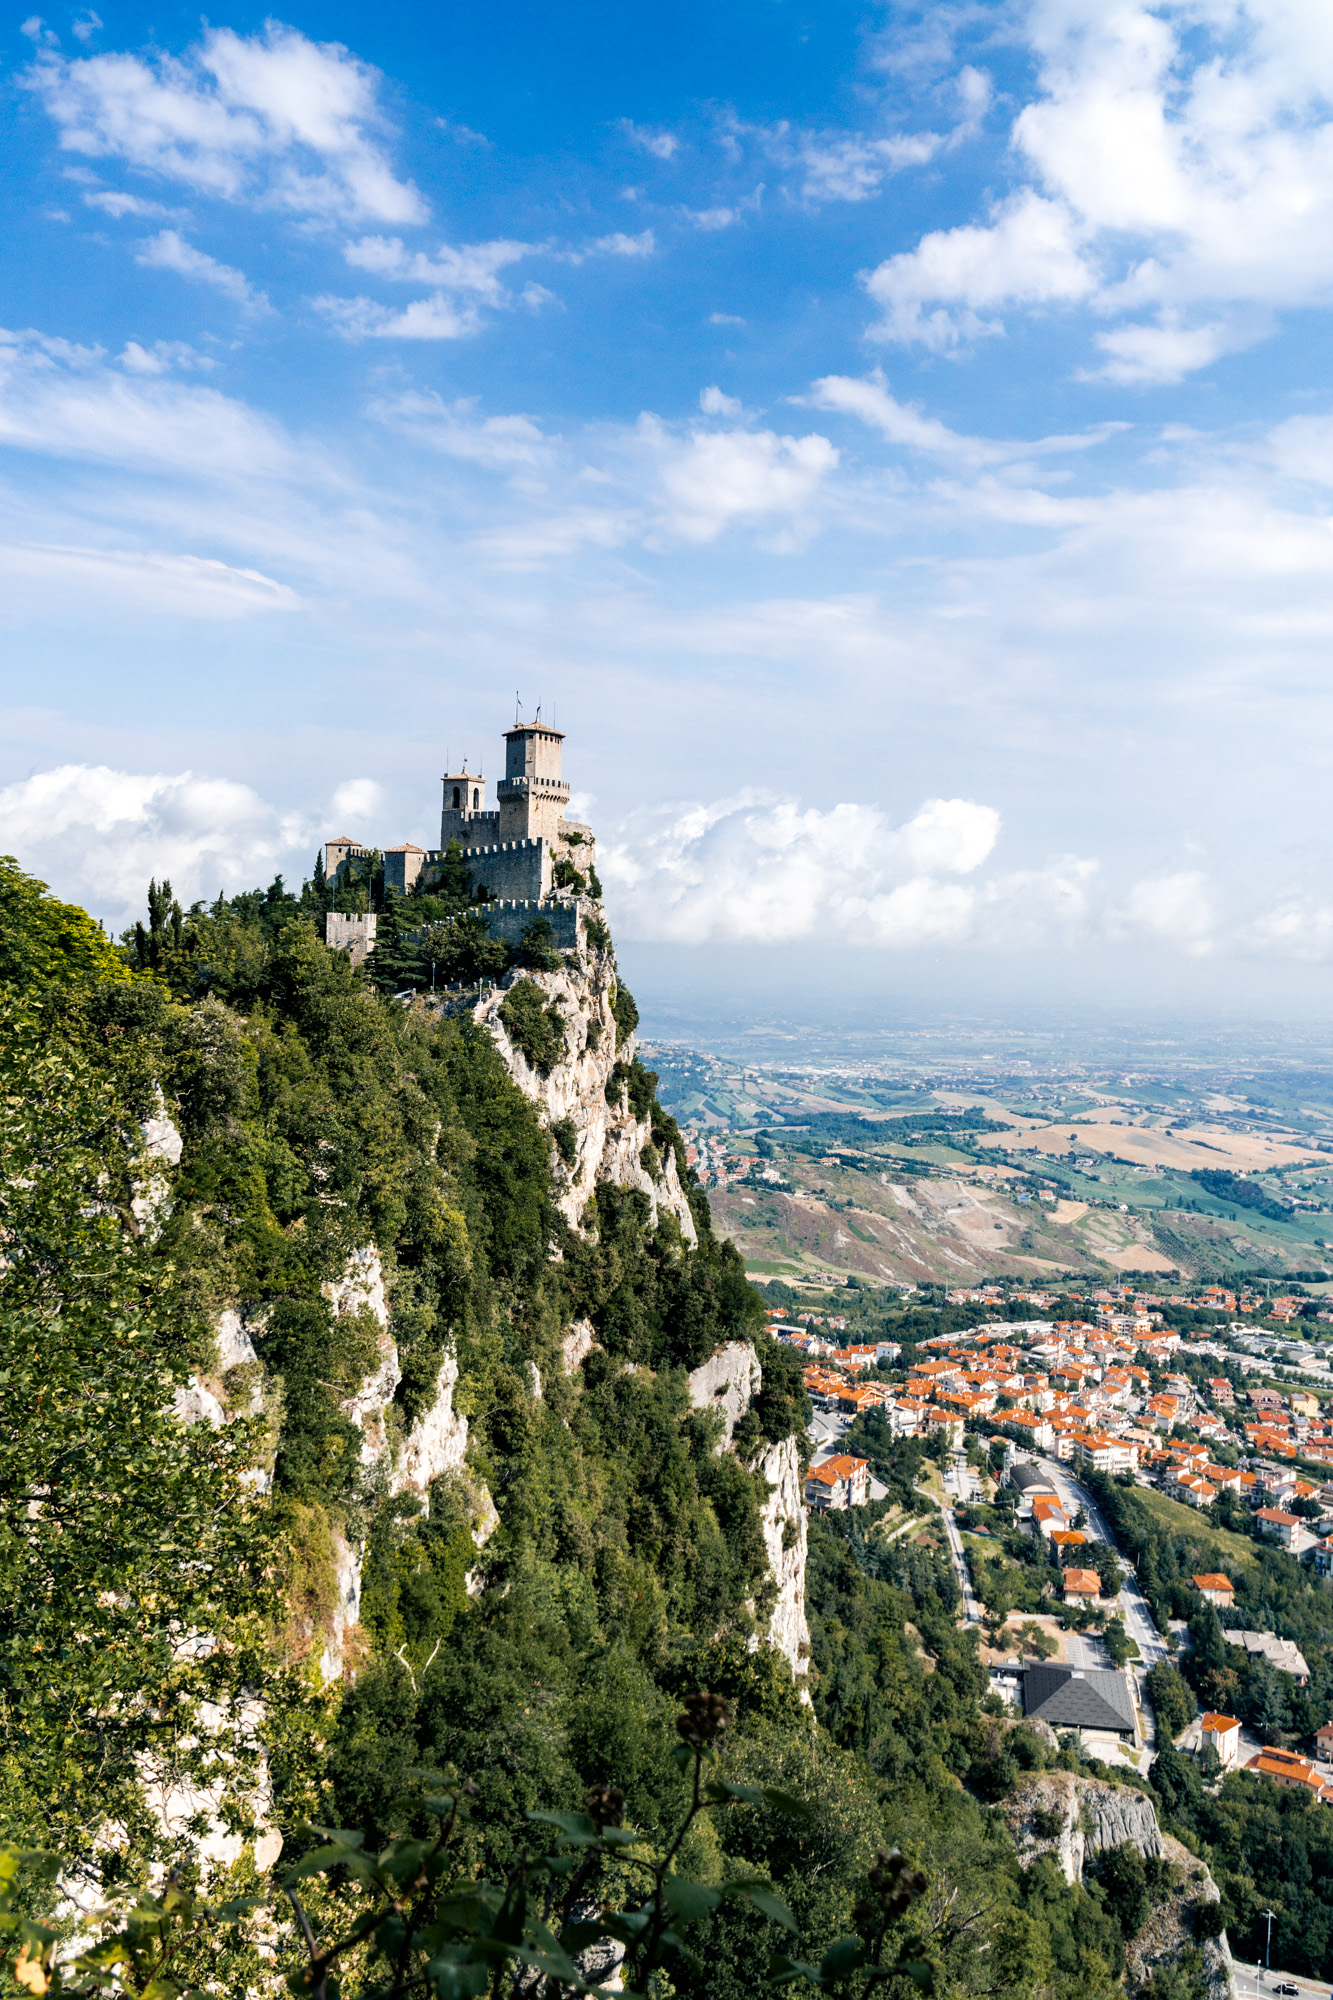 France/Italy roadtrip – San Marino